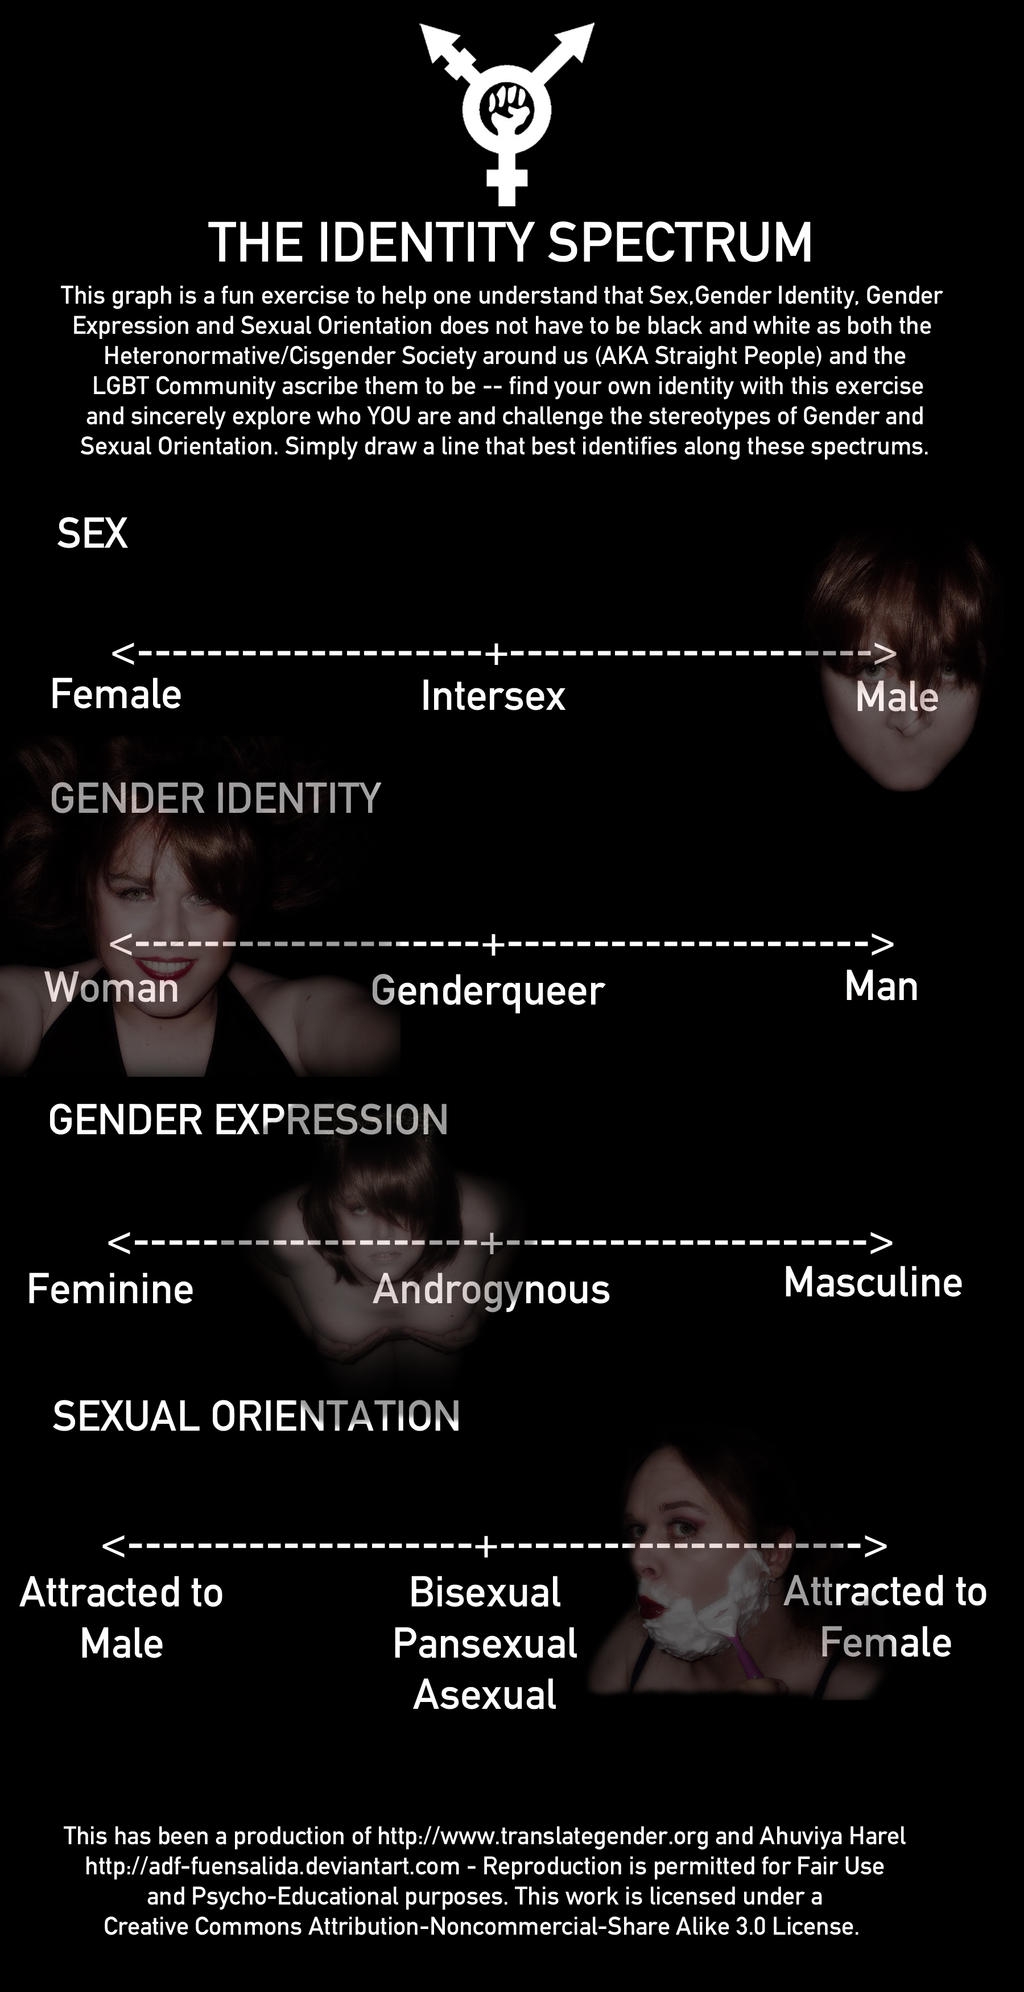 Gender Identity Spectrum Meme by MovesInSilence on DeviantArt